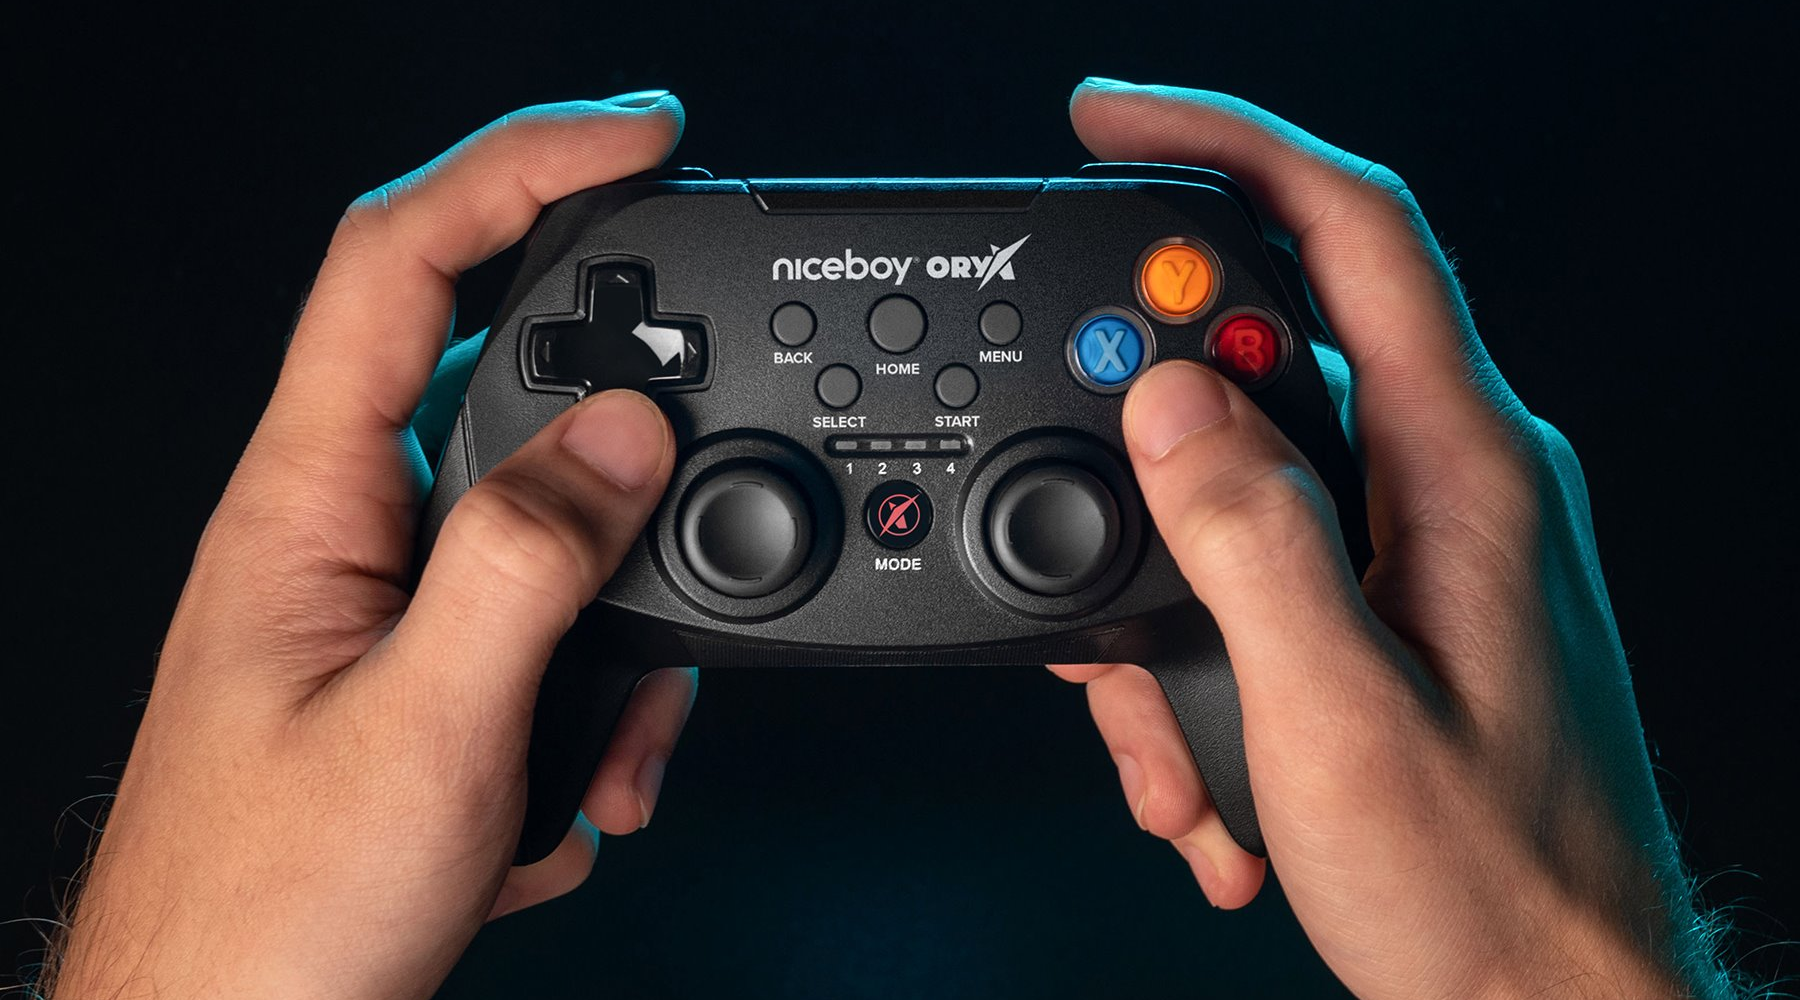 Univerzálny herný ovládač Niceboy ORYX GamePad je špeciálne určený pre PC, chytré telefóny aj herné konzoly 7. generácie, ako je Playstation 3 alebo Xbox 360.